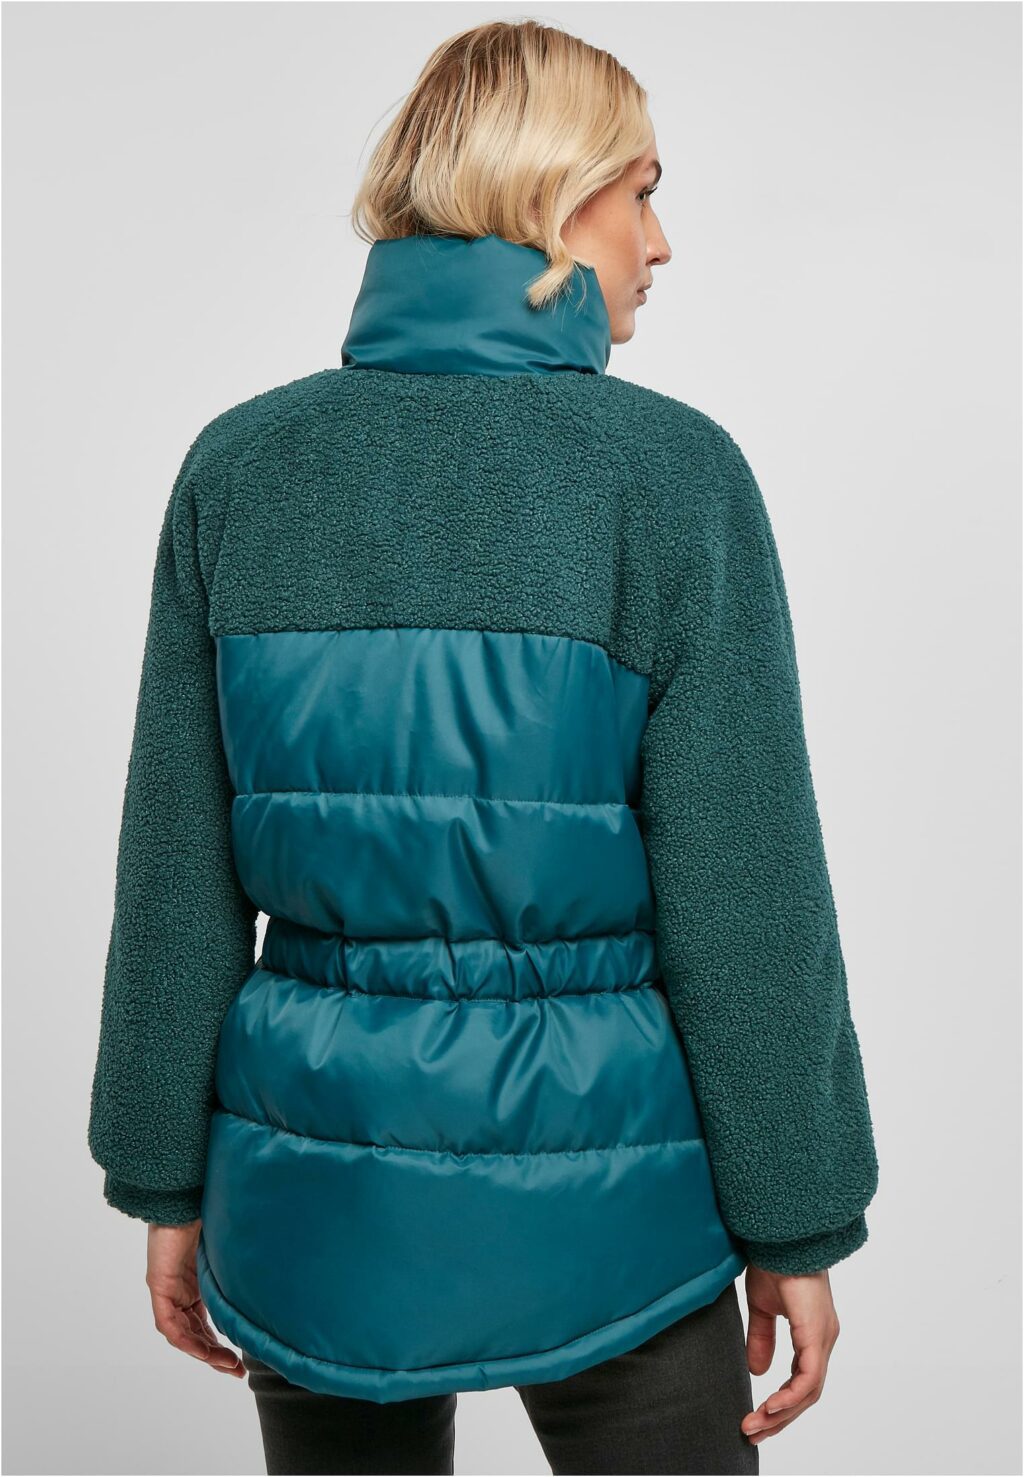 Urban Classics Ladies Sherpa Mix Puffer Jacket jasper TB3768